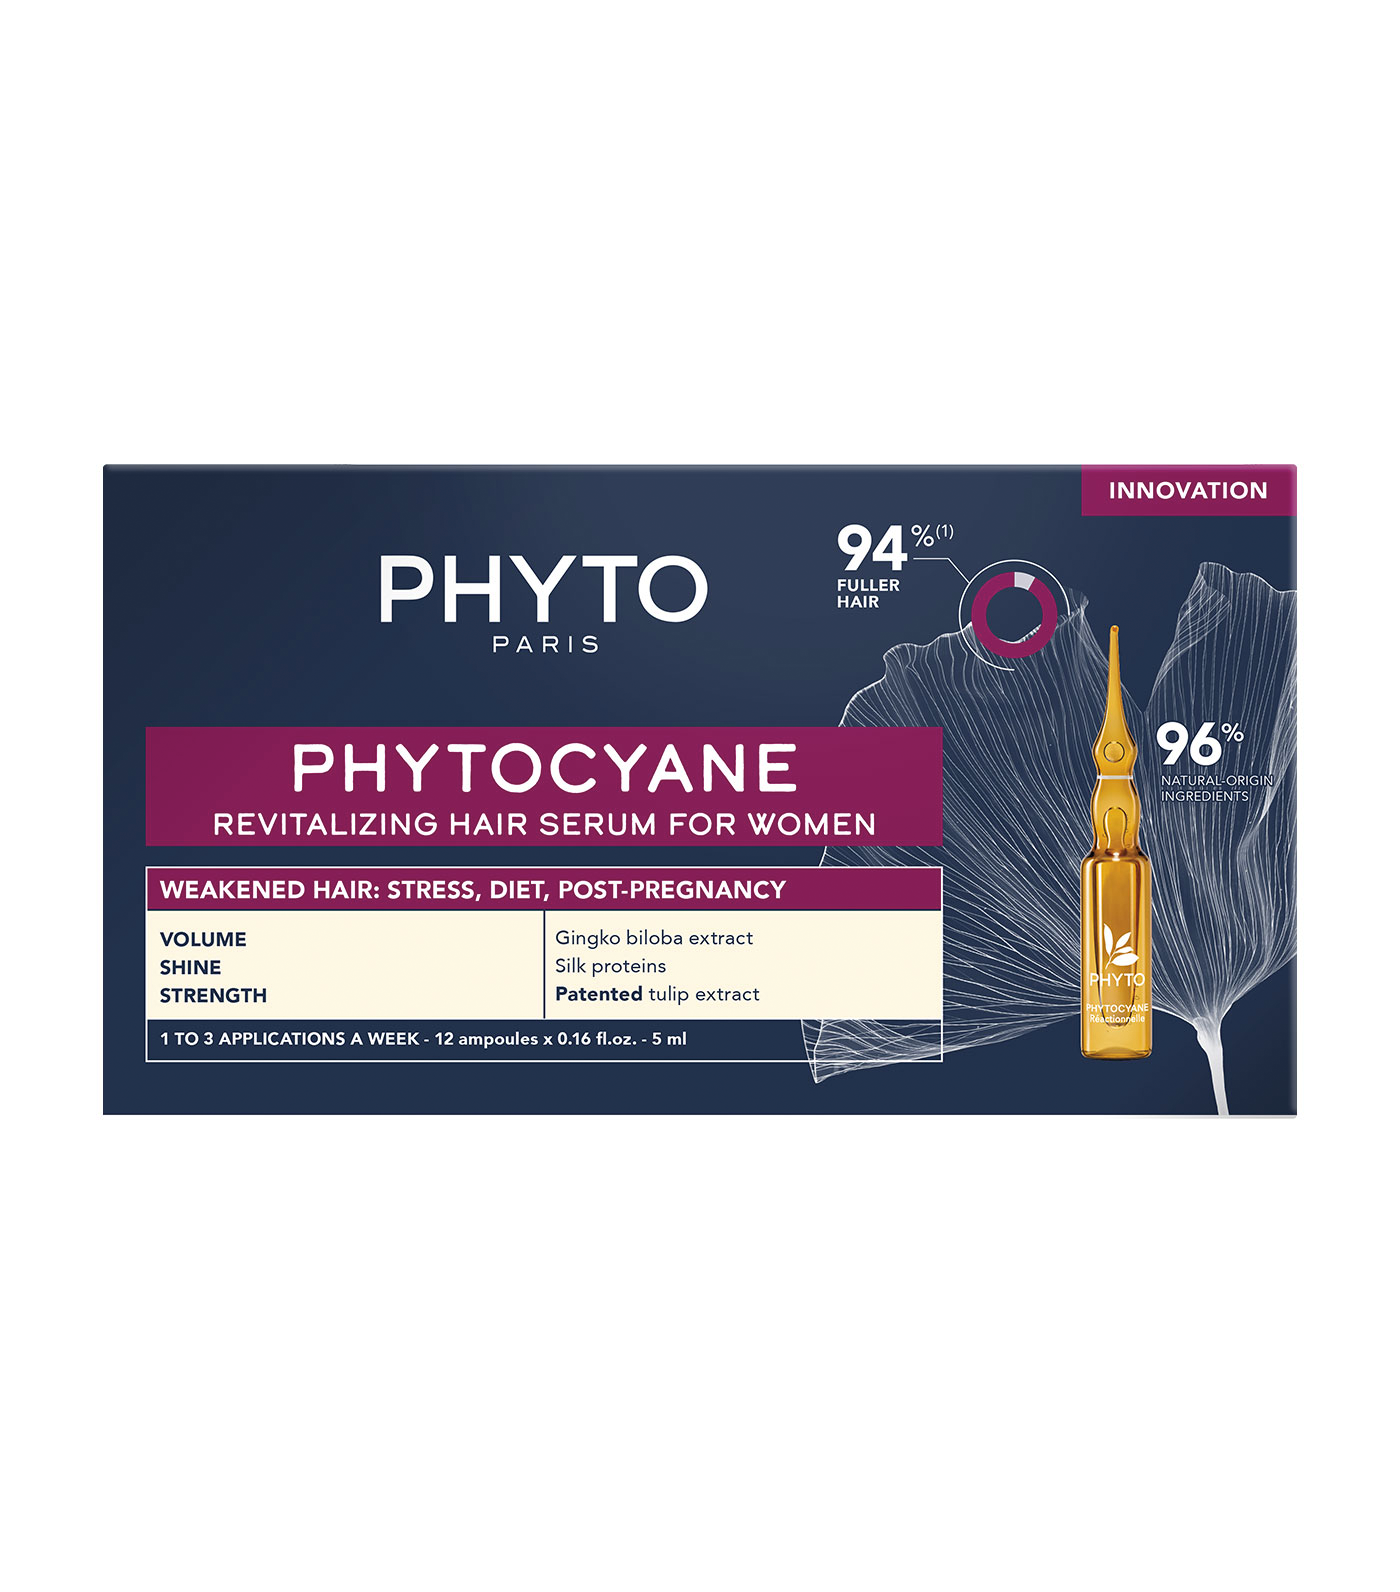 Phytocyane Revitalizing Hair Serum for Women